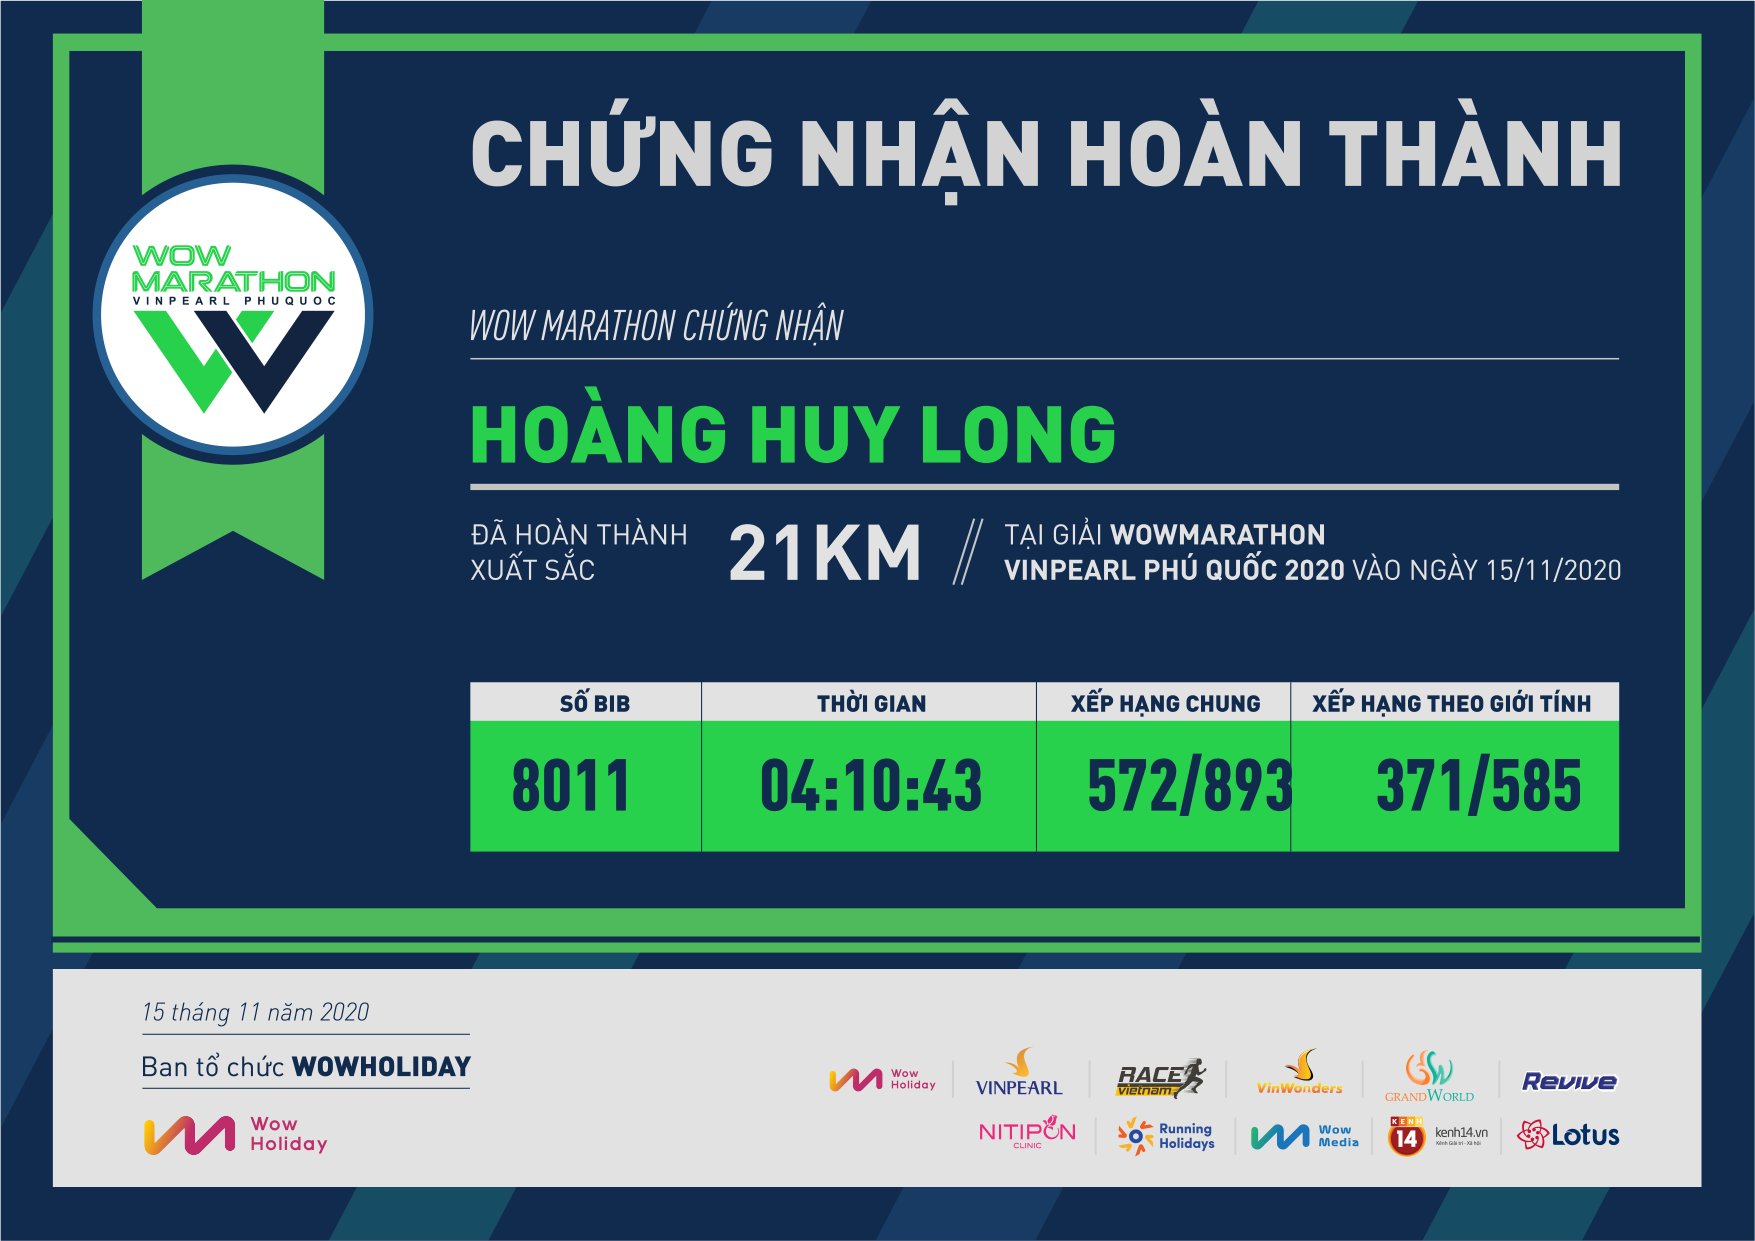 8011 - Hoàng Huy Long